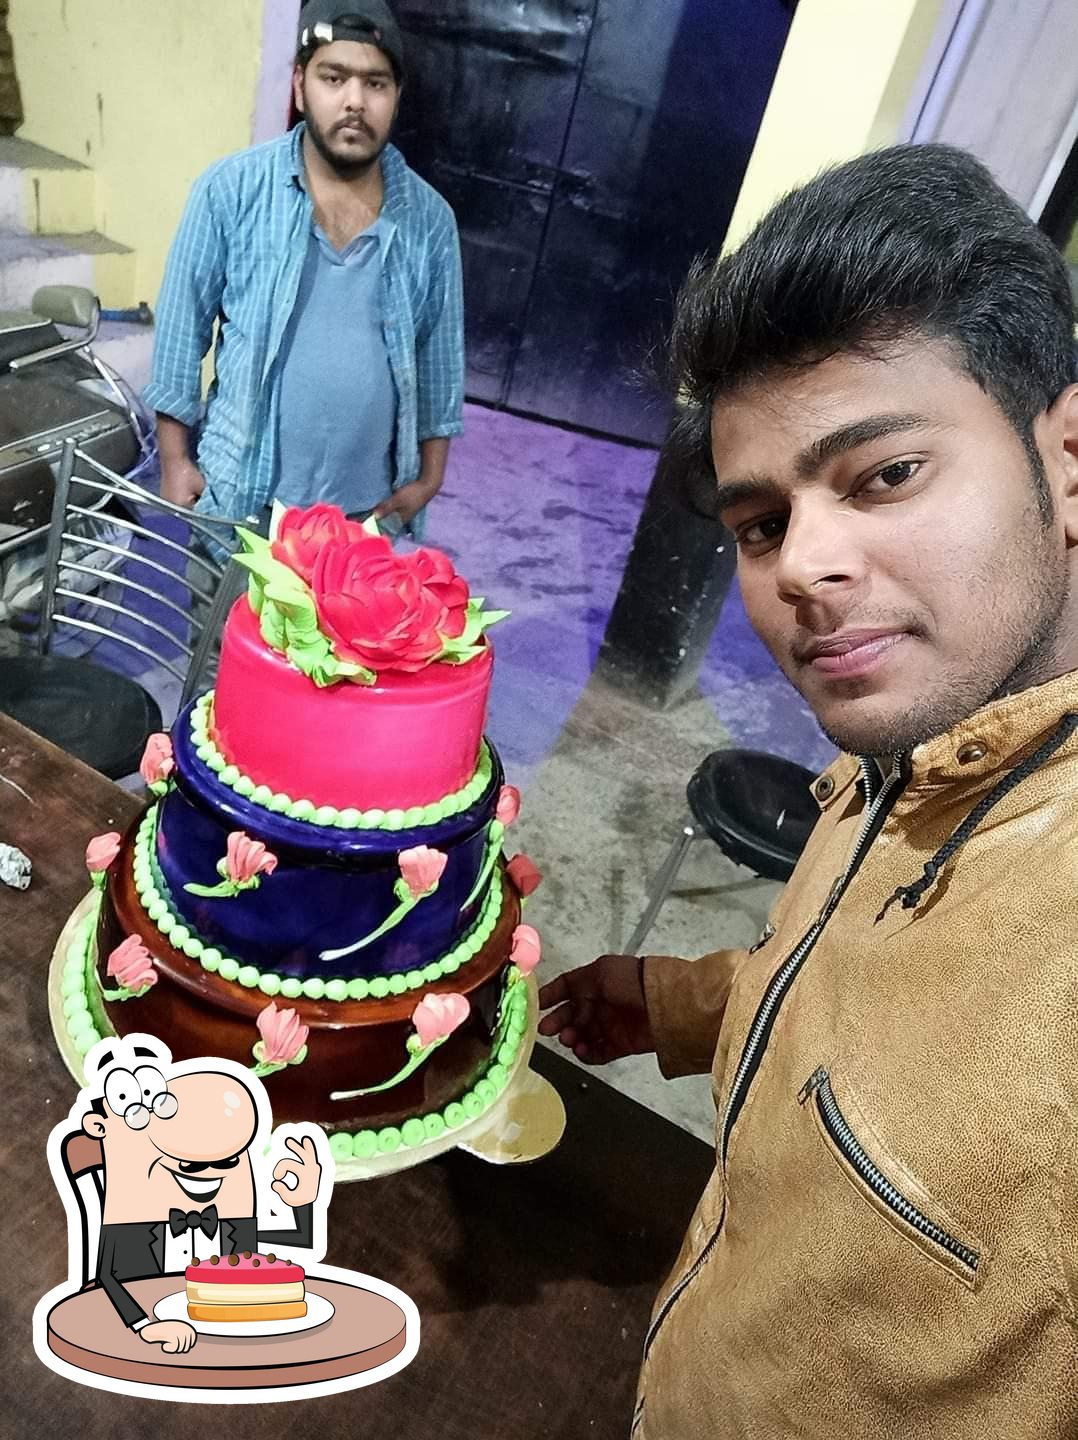 Cake Ghar Rangia in rangia,Rangia - Best Bakeries in Rangia - Justdial